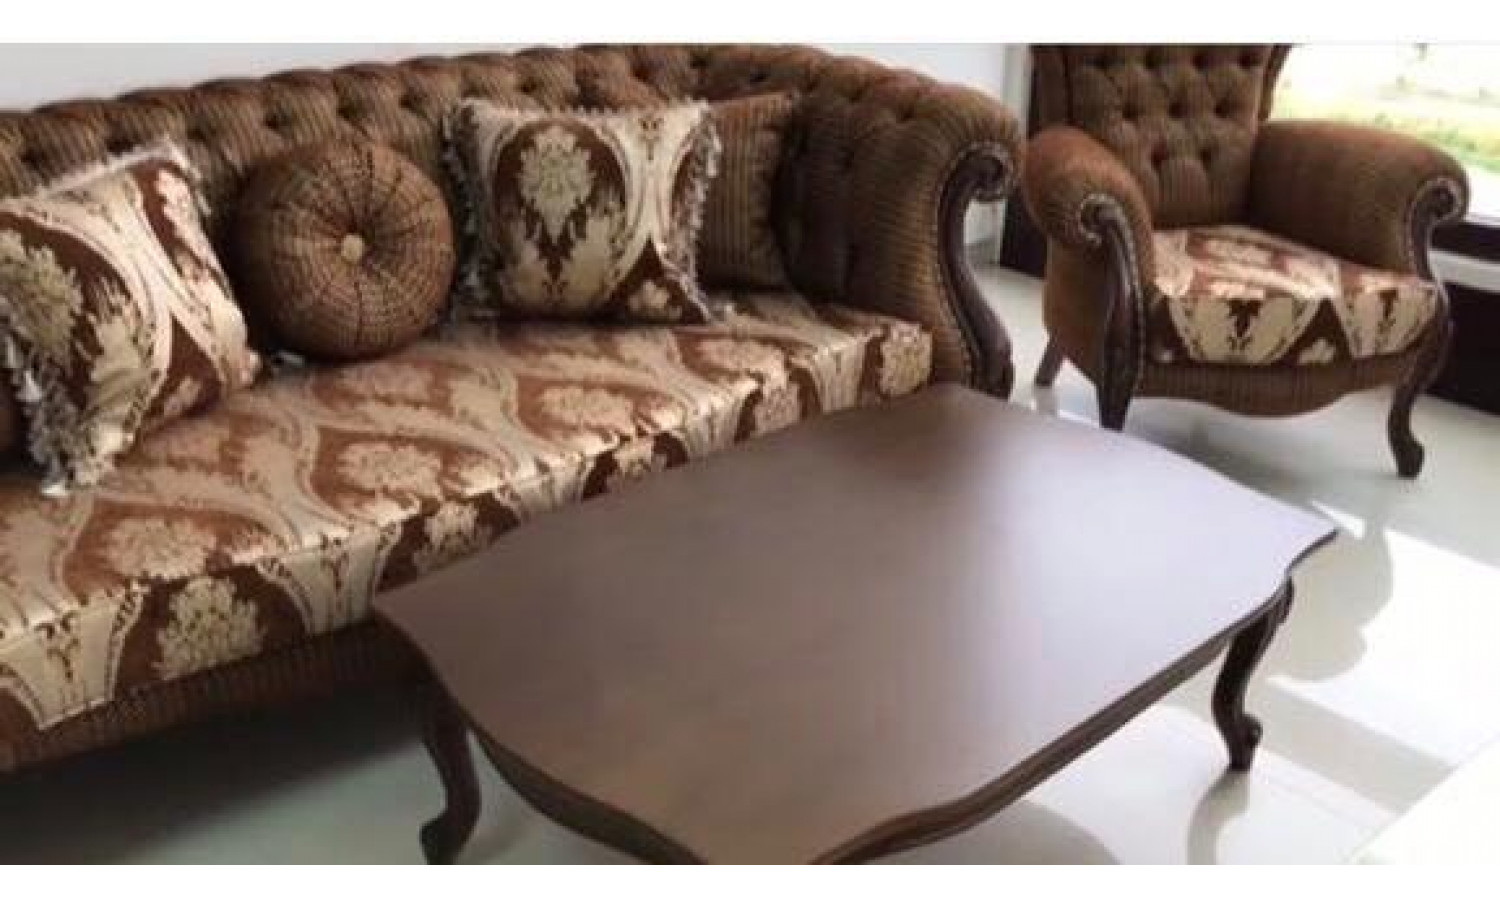 Комплект мягкой мебели ХЮРРЕМ CHURREM, орех, ткань - коричневый